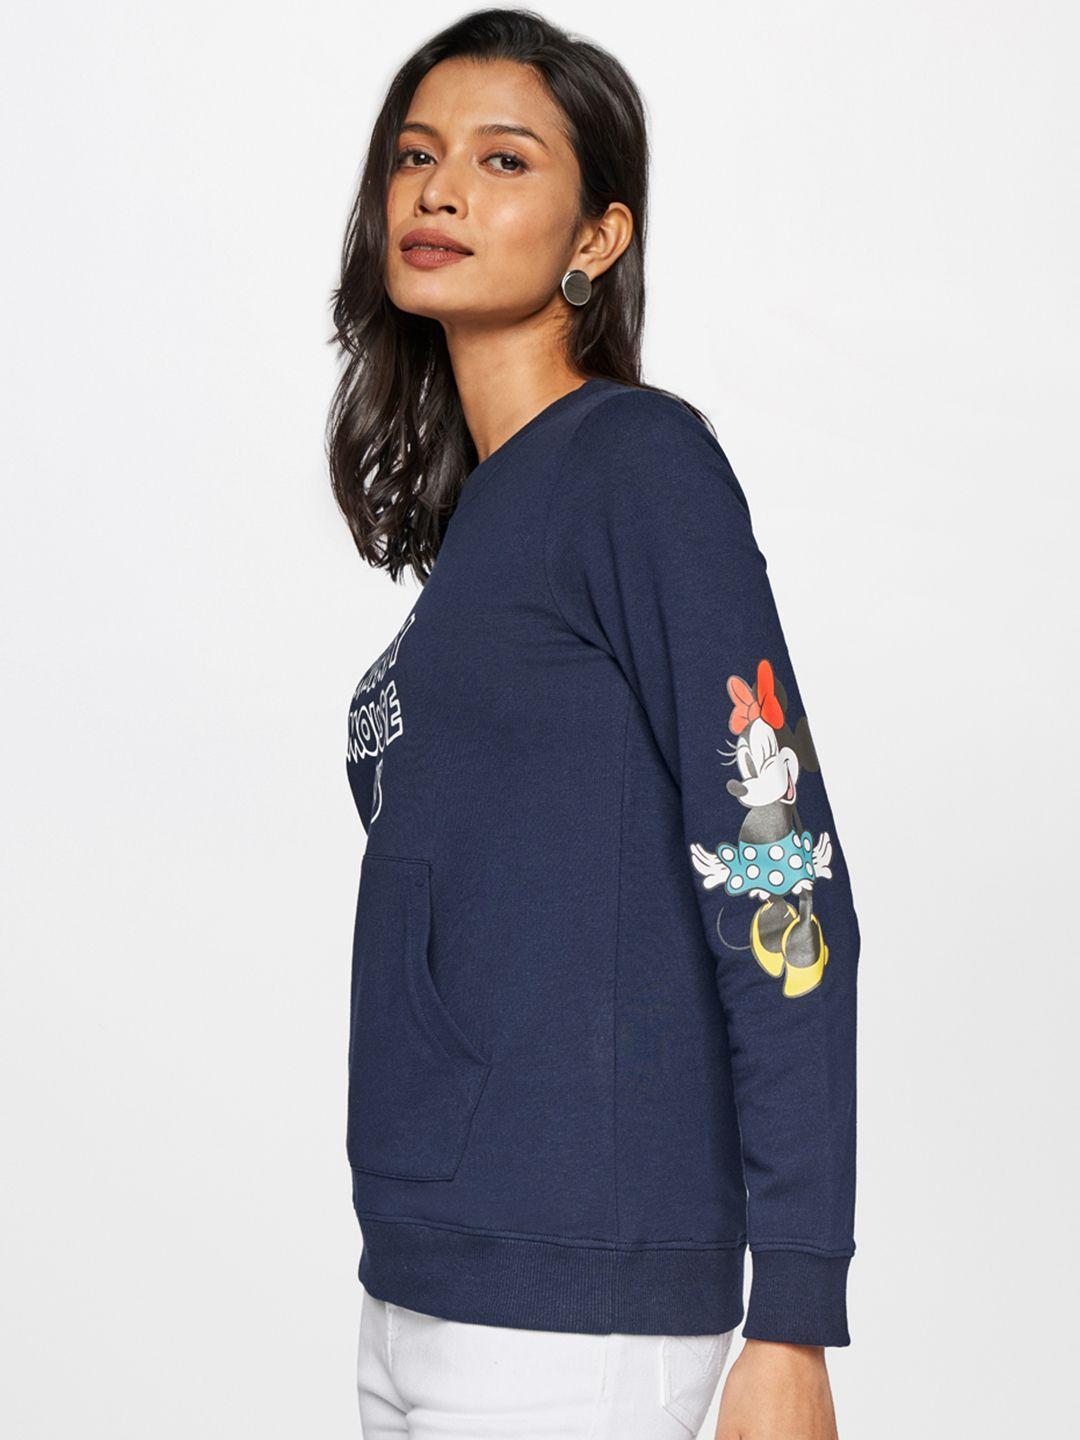 and women navy blue & white printed sweatshirt